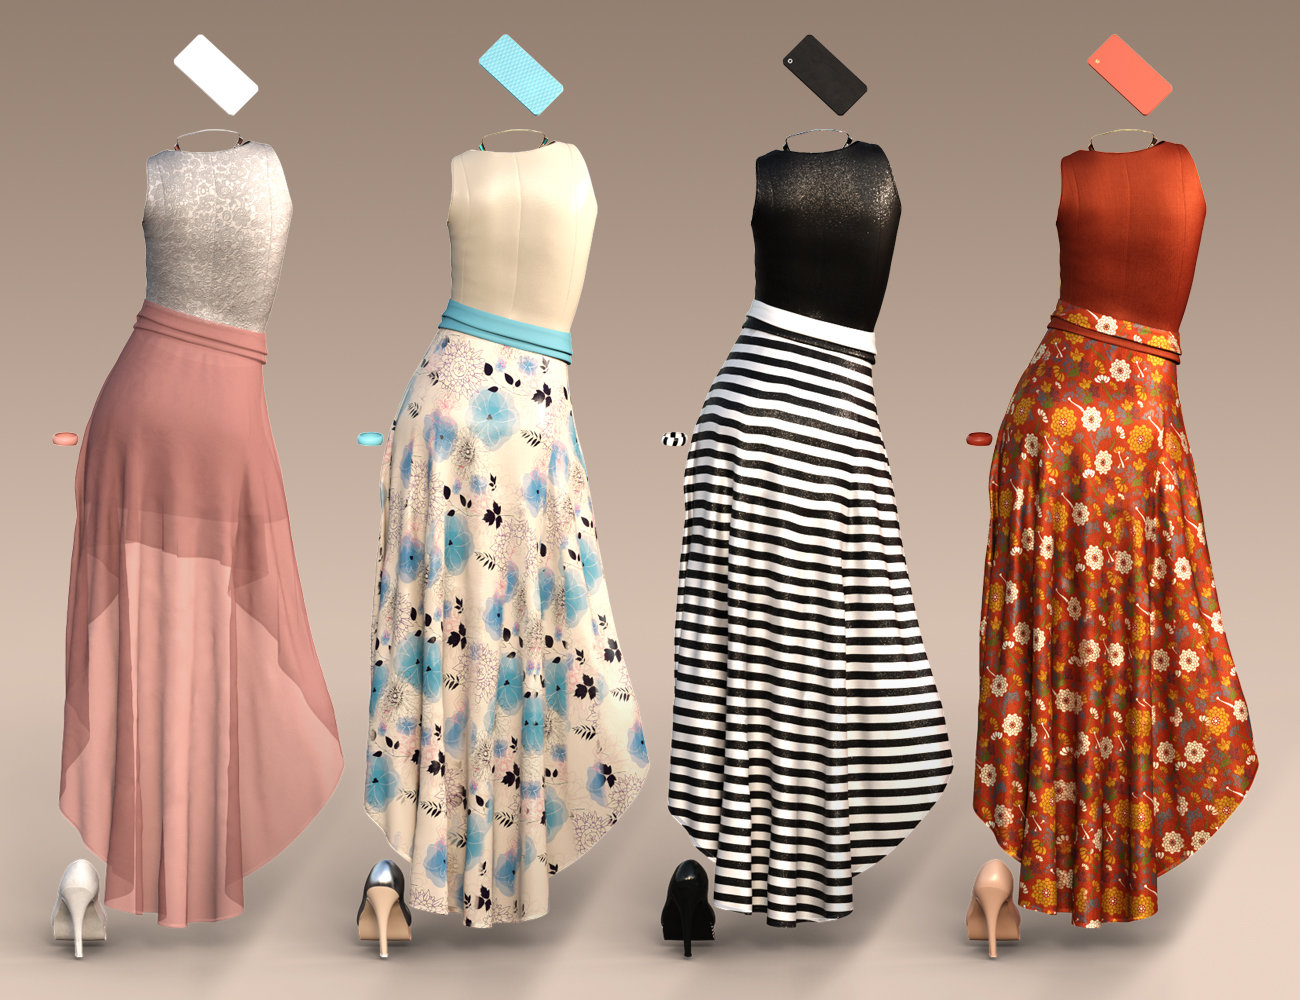 dForce Hi-Low Dress Textures by: Moonscape GraphicsSade, 3D Models by Daz 3D